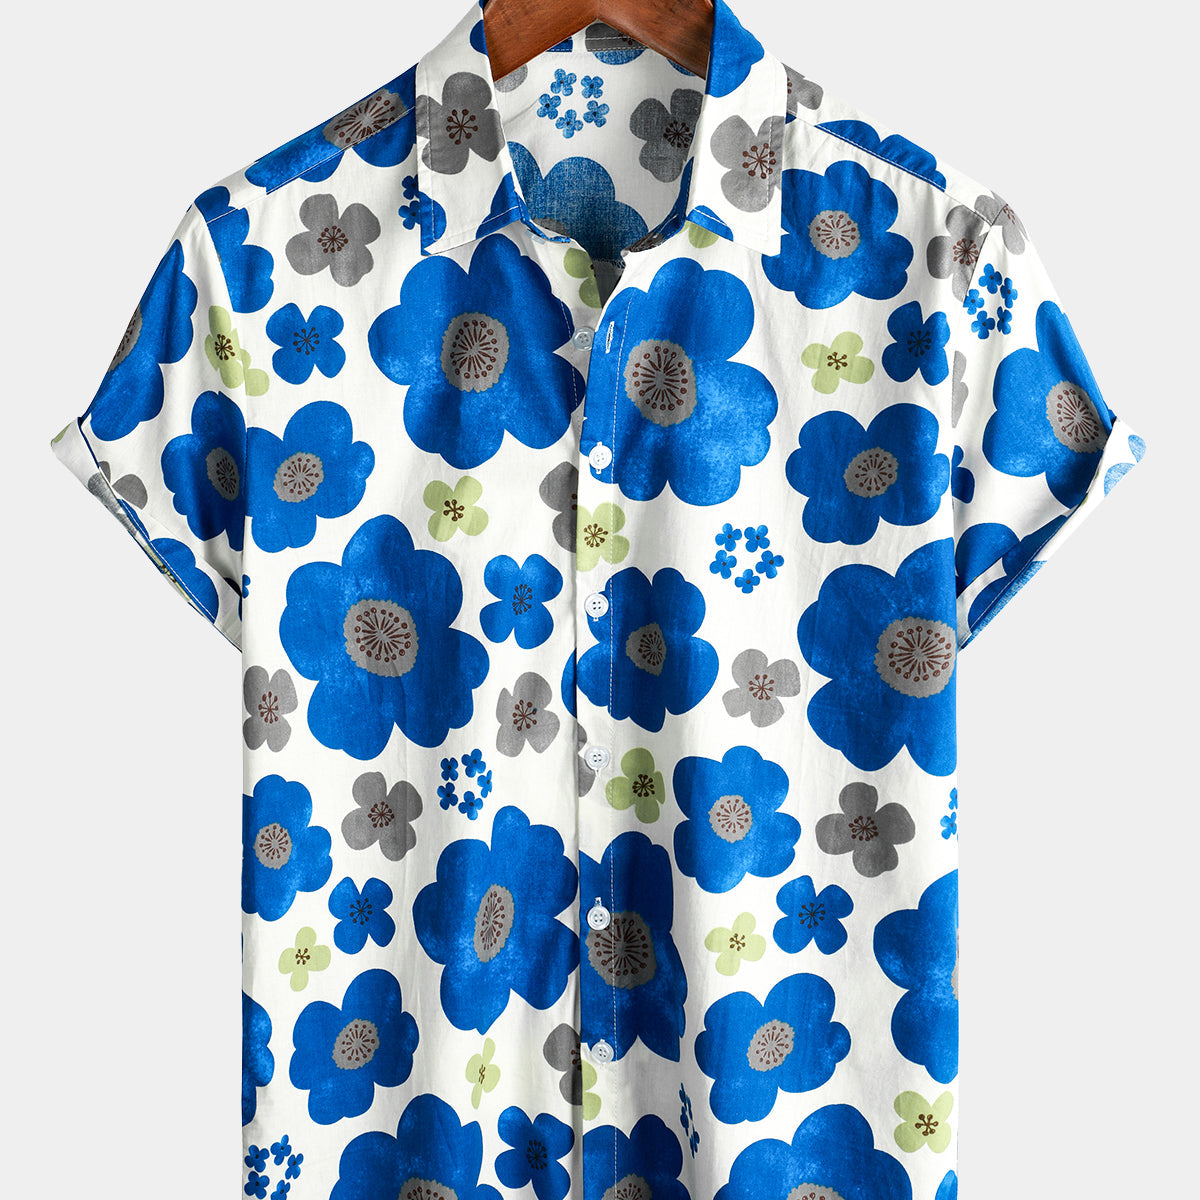 Chemise hawaïenne d'été à manches courtes en coton boutonné pour hommes